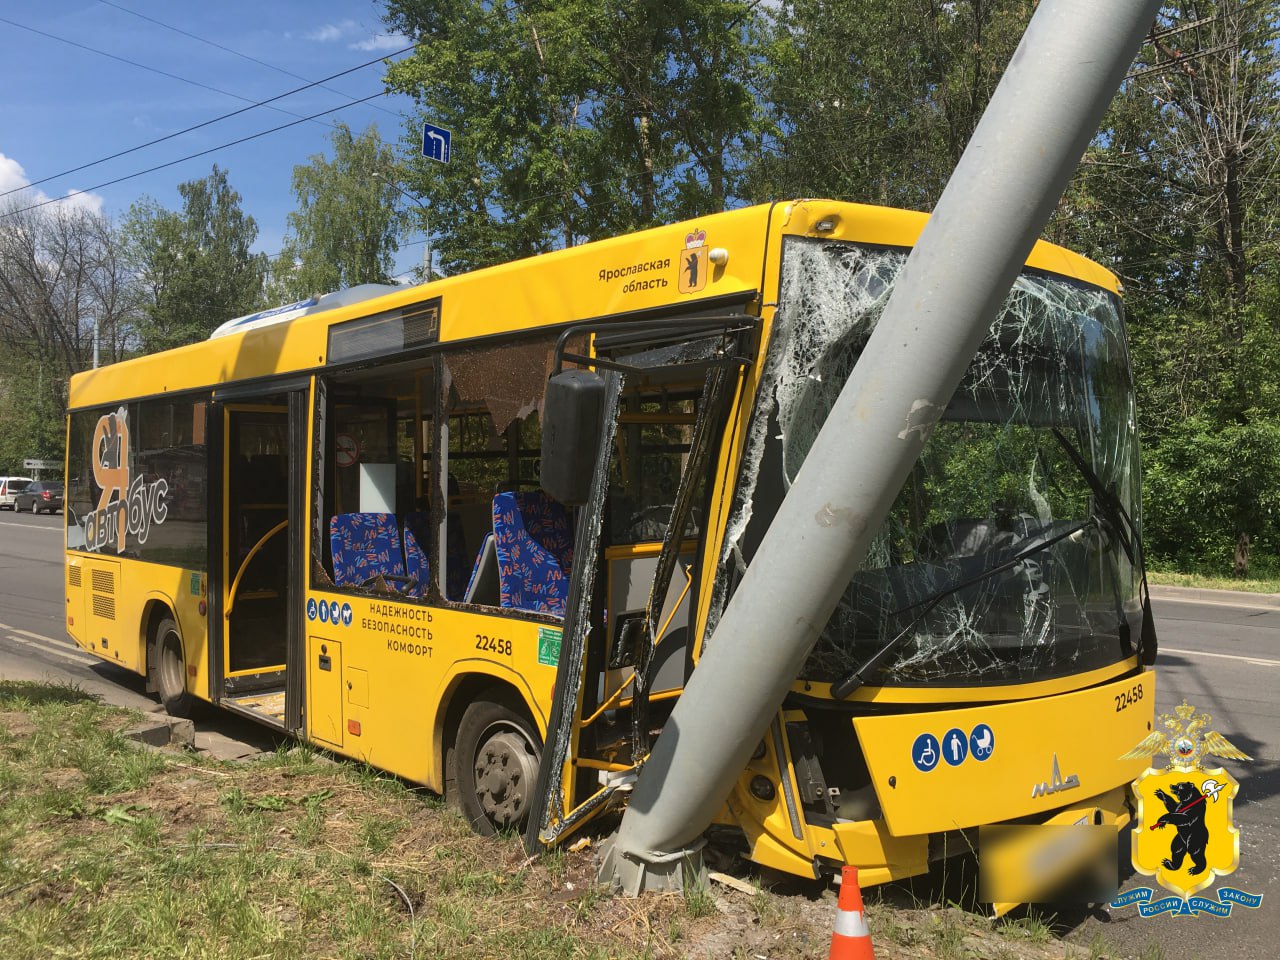 Ярославцам рассказали, кто был за рулем автобуса, попавшего в ДТП